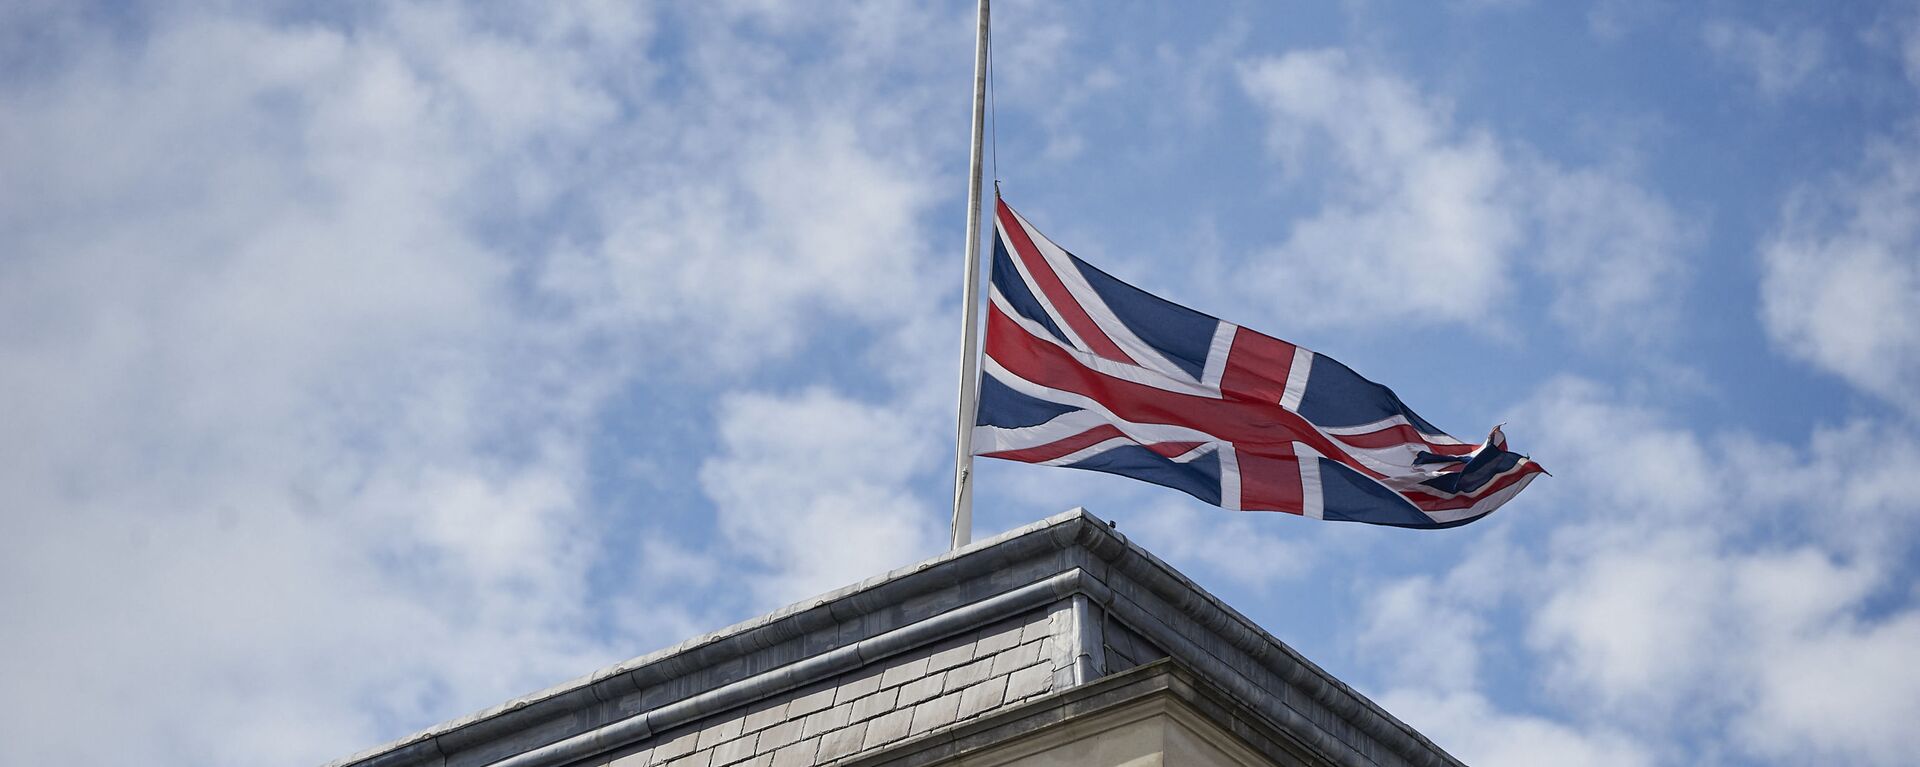 Quốc kỳ Anh trên tòa nhà Bộ Ngoại giao Anh ở London. - Sputnik Việt Nam, 1920, 04.04.2022